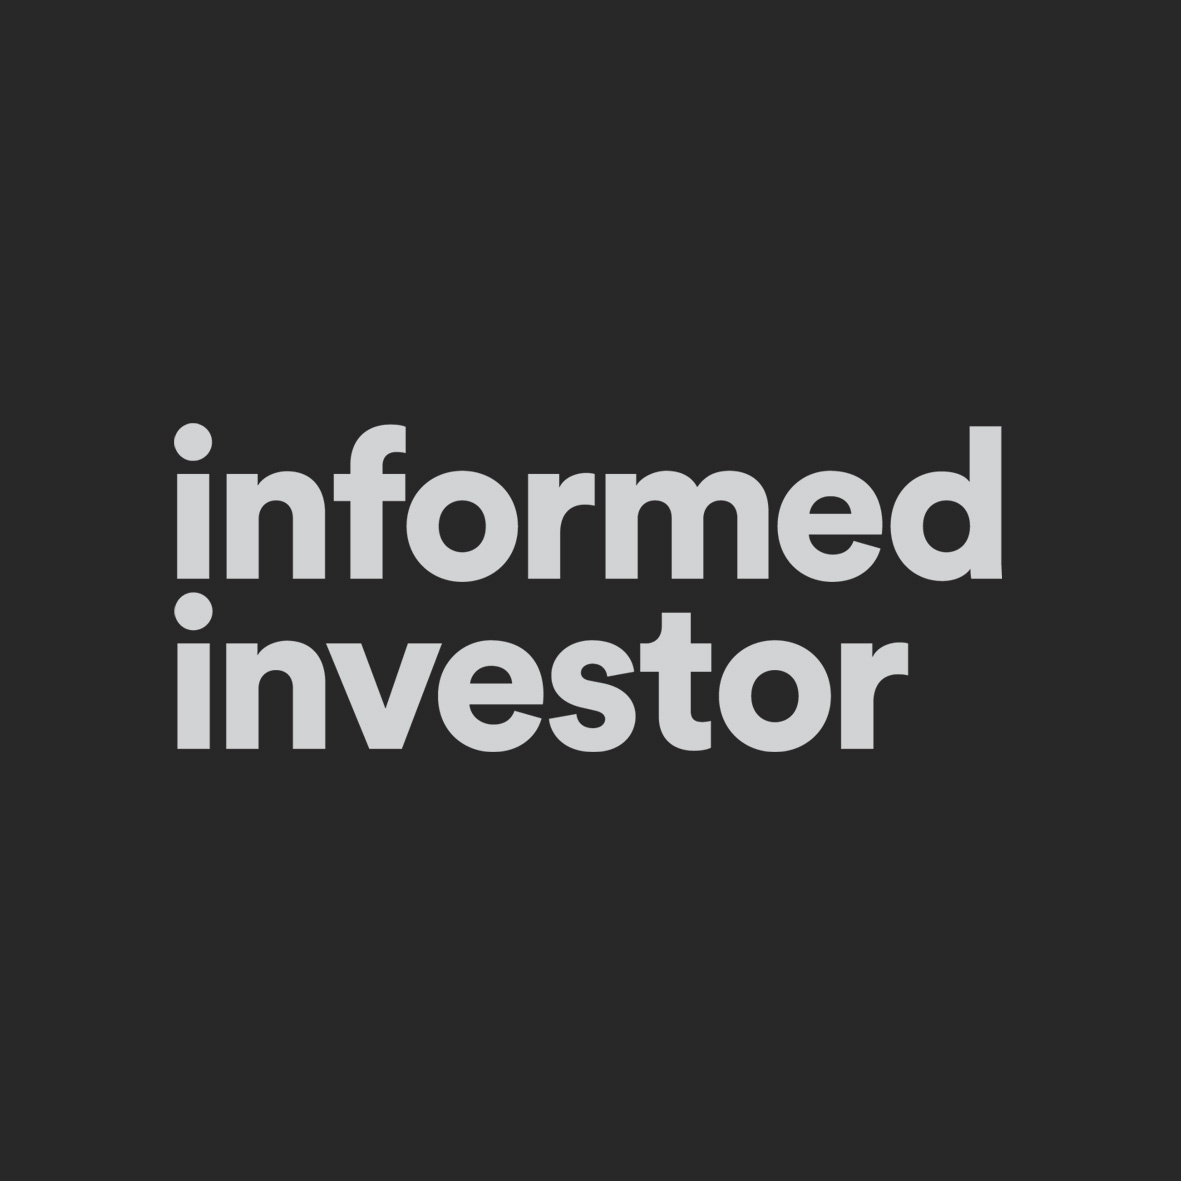 Informed Investor masthead